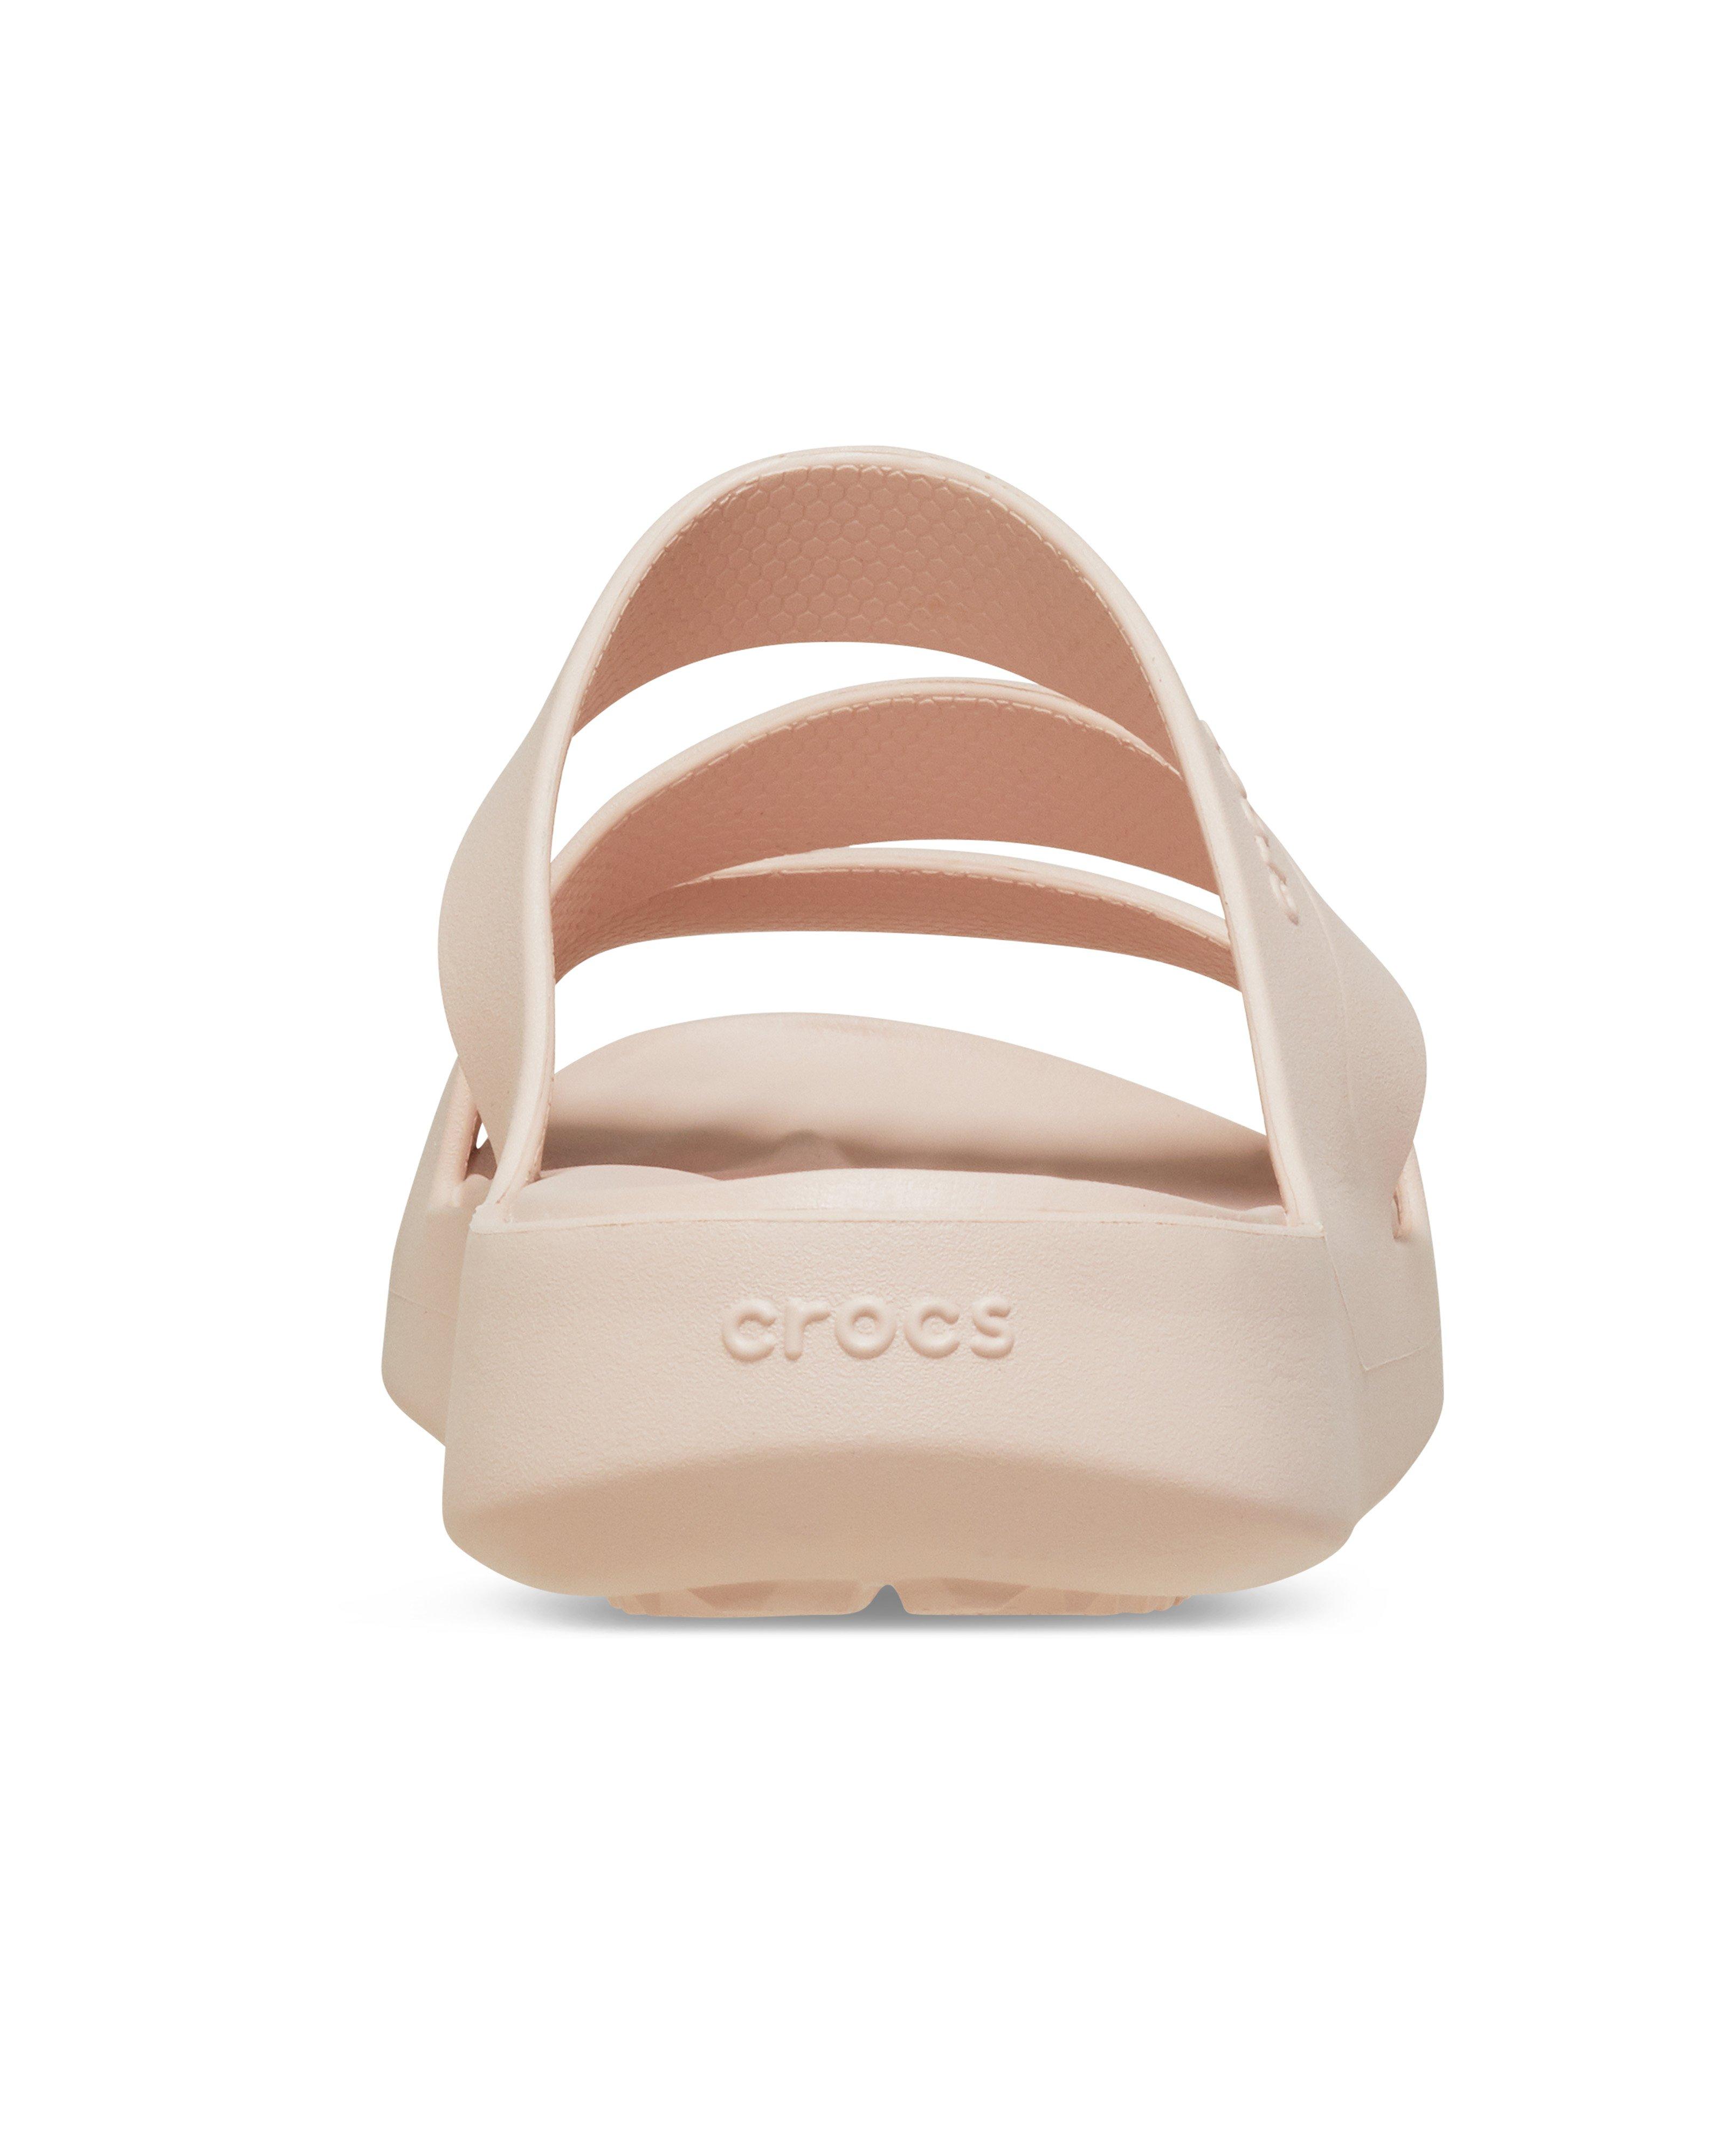 Crocs Women’s Getaway Slides -  Light Pink